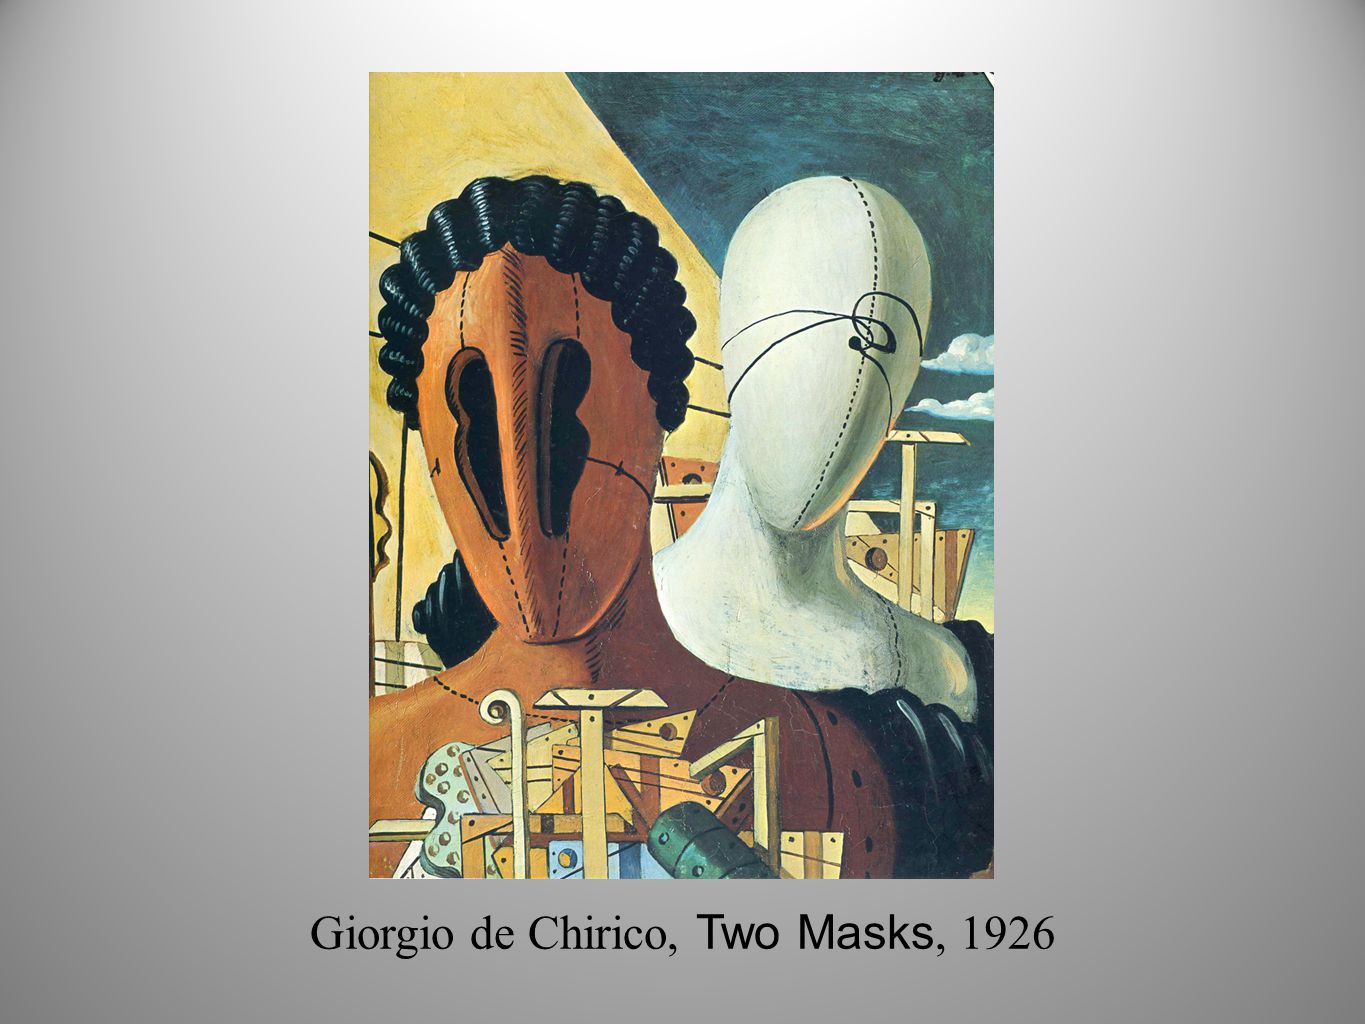 Giorgio de Chirico, Two Masks, 1926